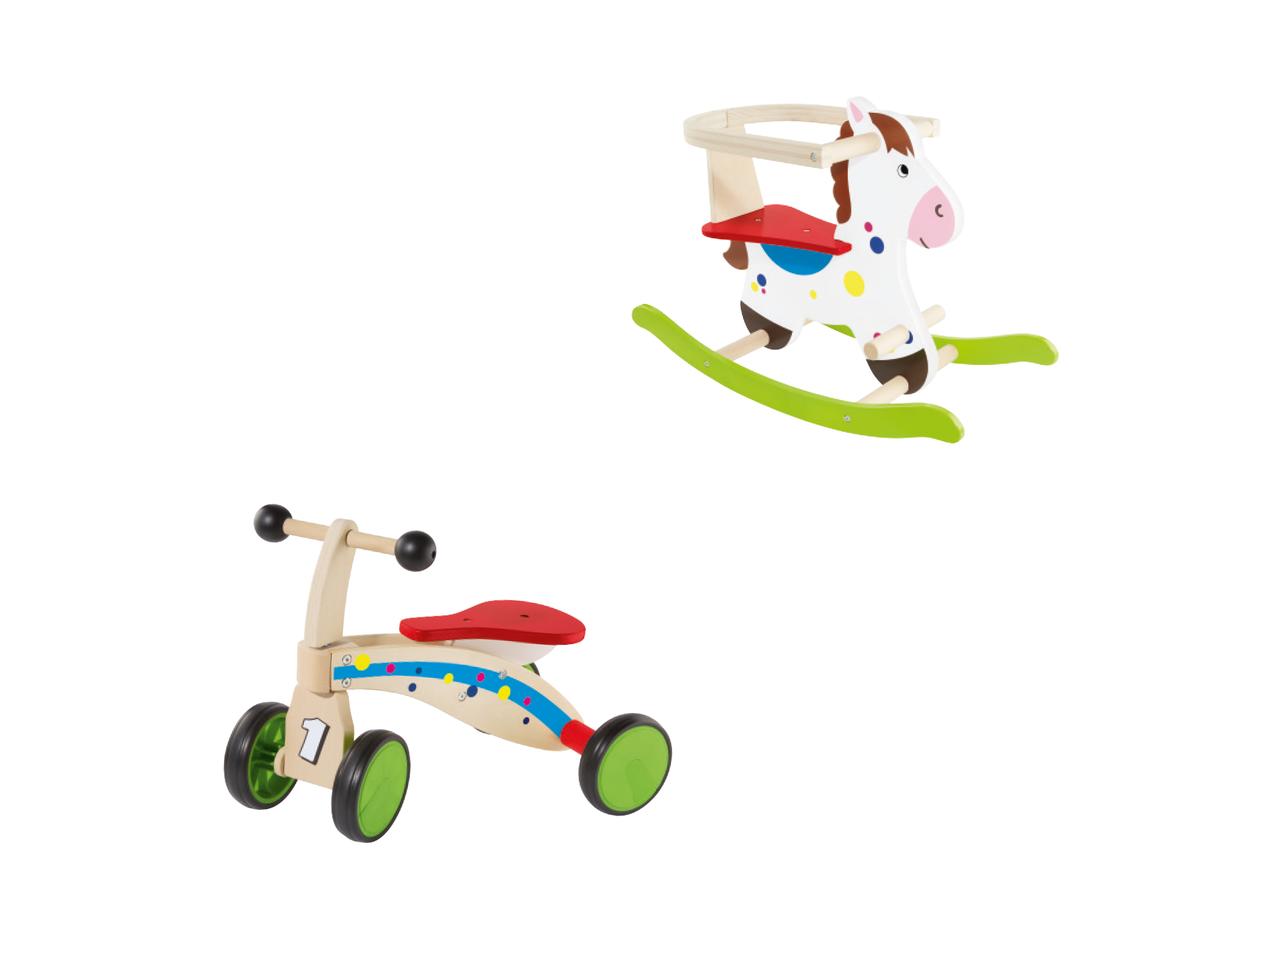 PLAYTIVE JUNIOR Wooden Trike/Rocking Horse